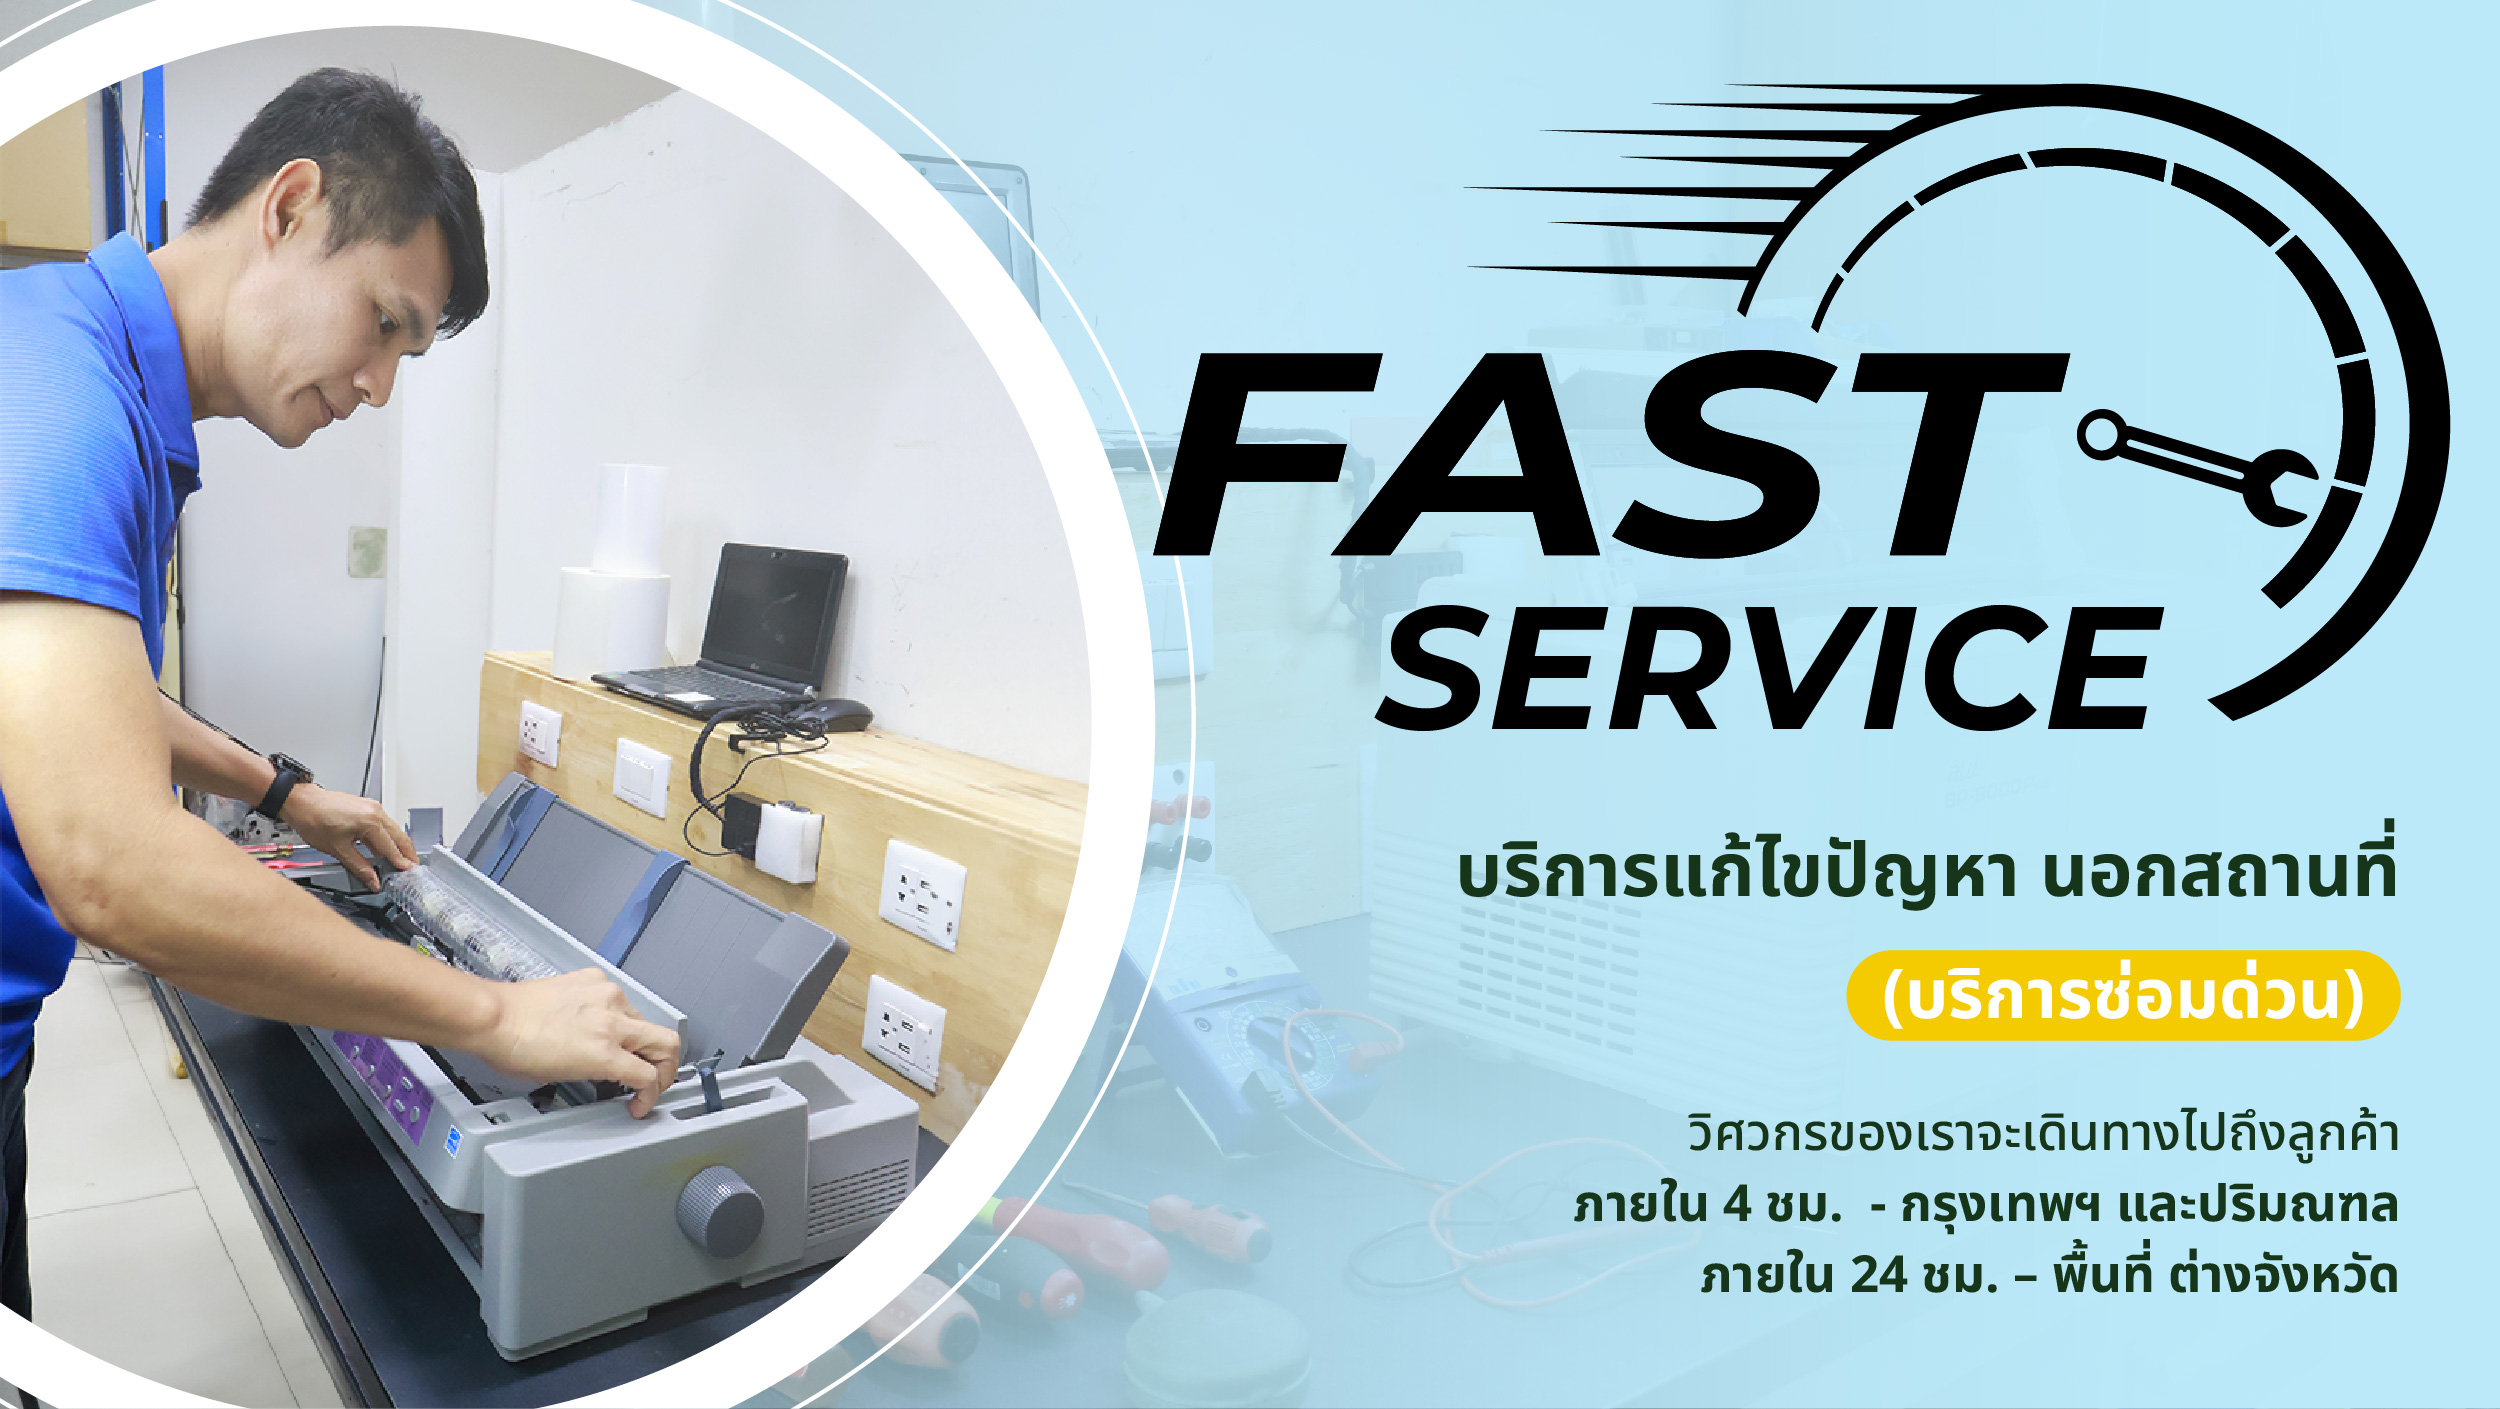 Onsite service.(Express service)